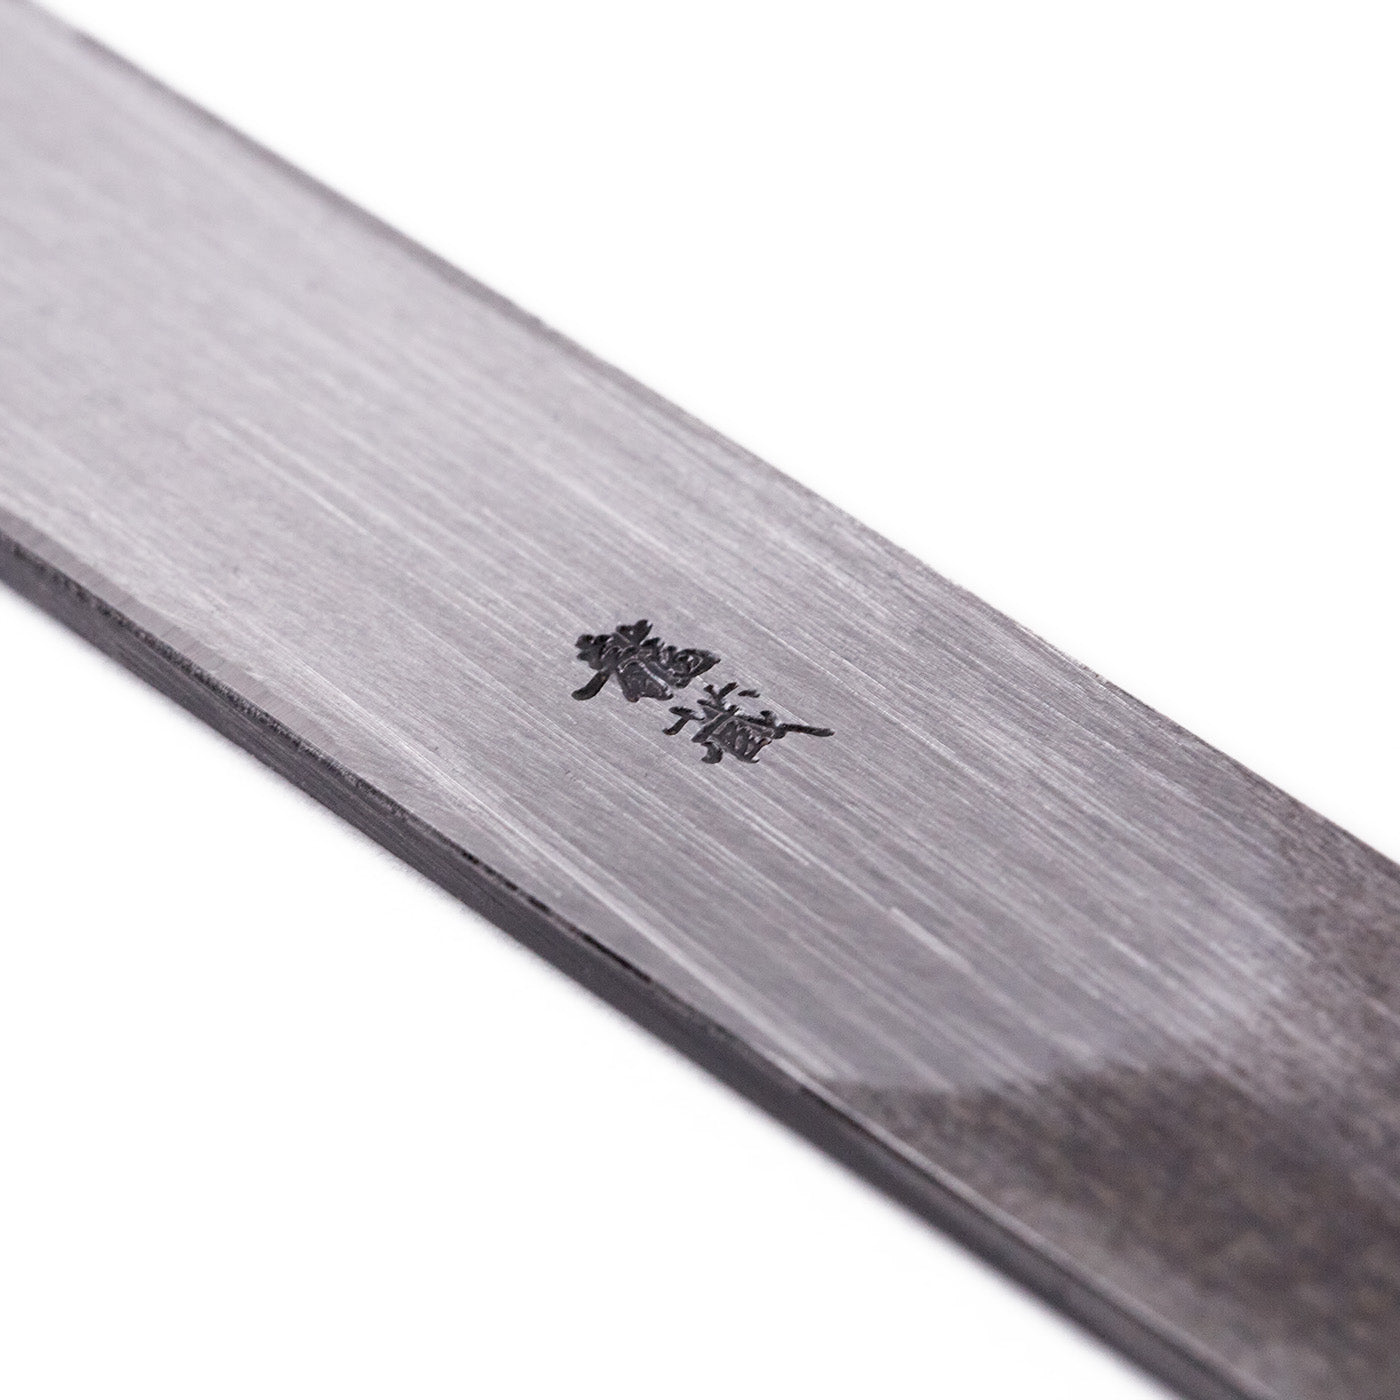 Kiridashi Knife 18mm